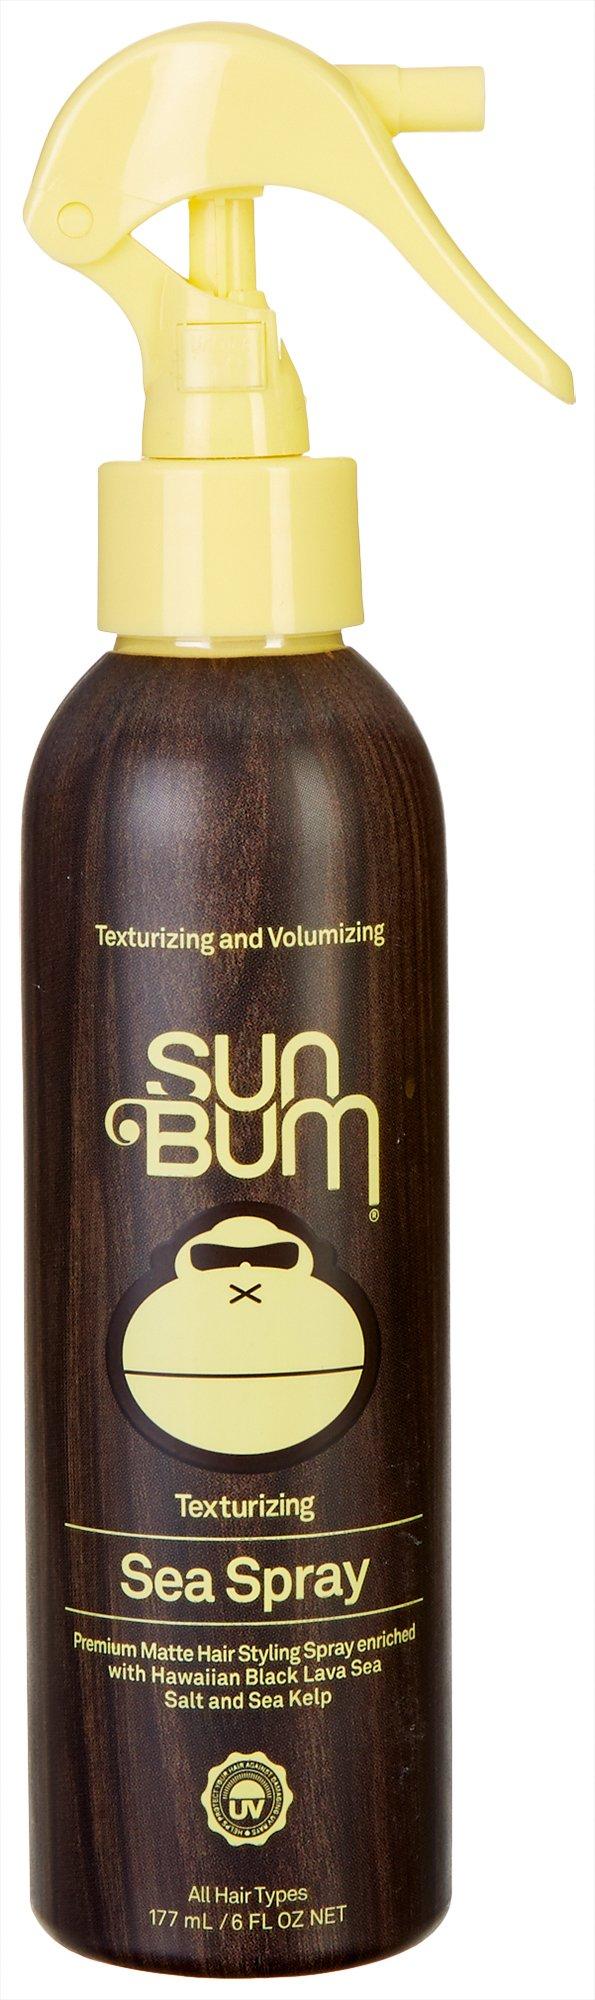 Sun Bum 6 fl. oz. Texturizing Sea Spray